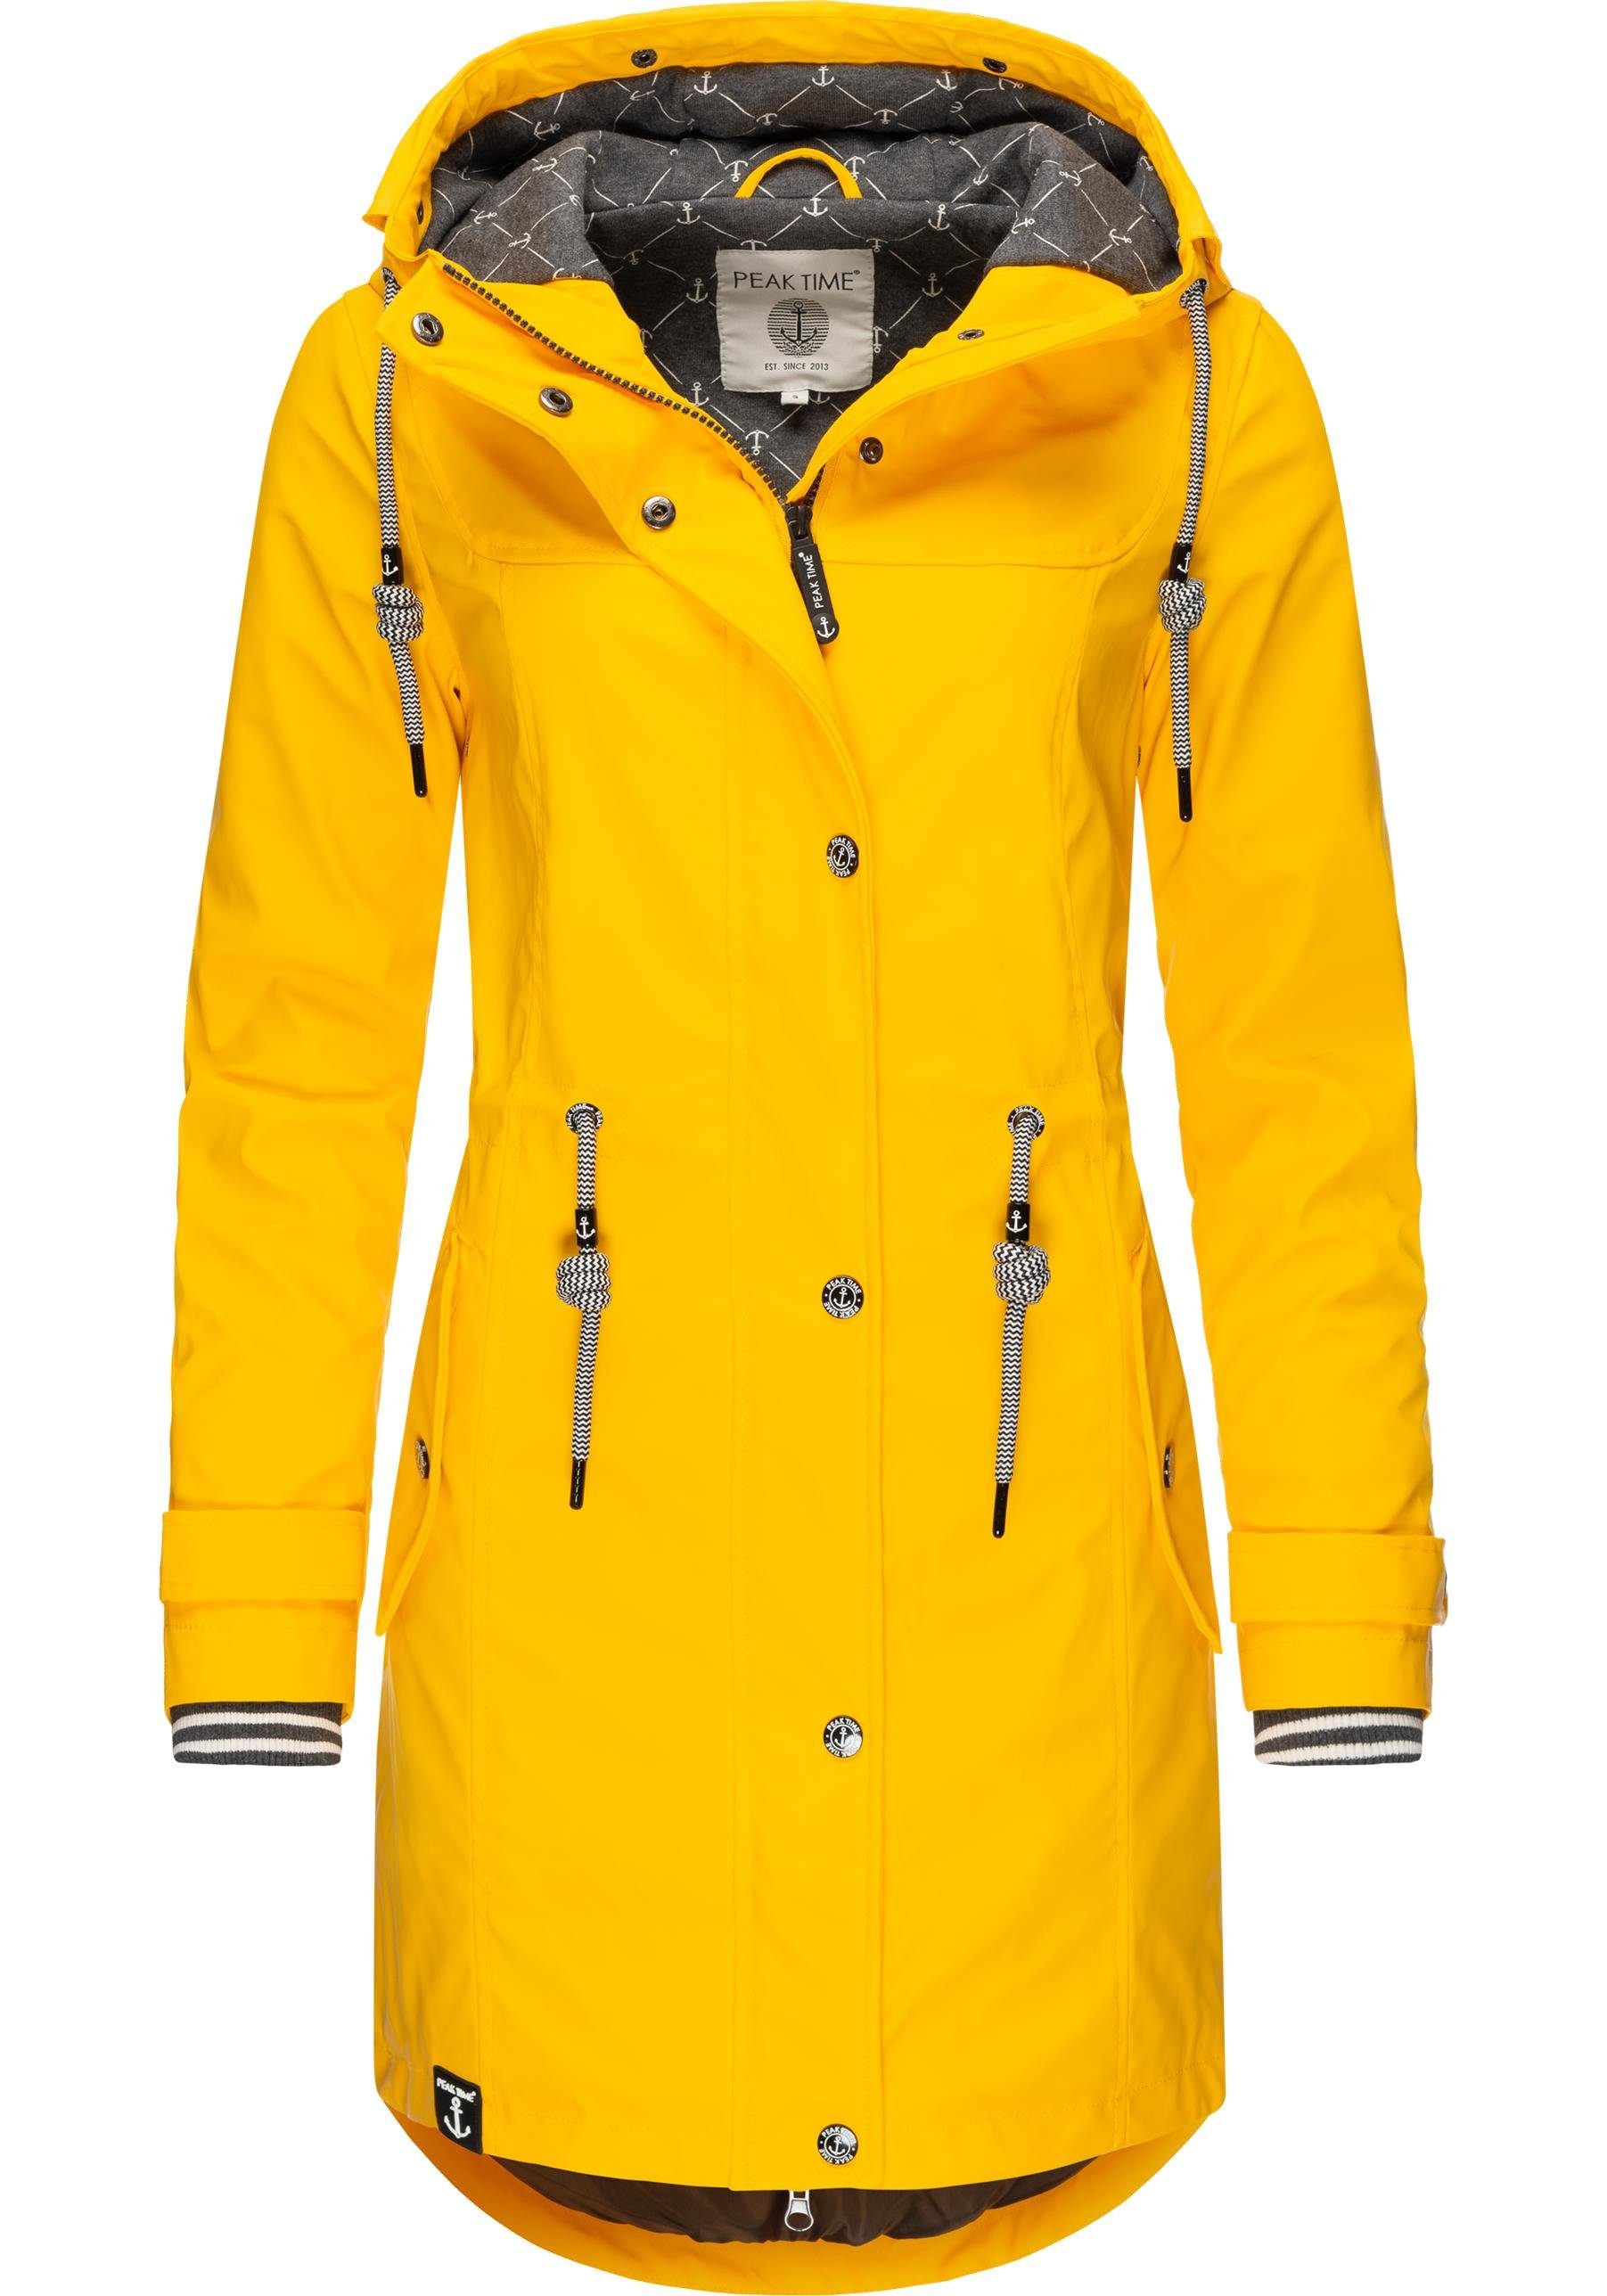 PEAK TIME Regenjacke »L60042« stylisch taillierter Regenmantel für Damen  online kaufen | OTTO